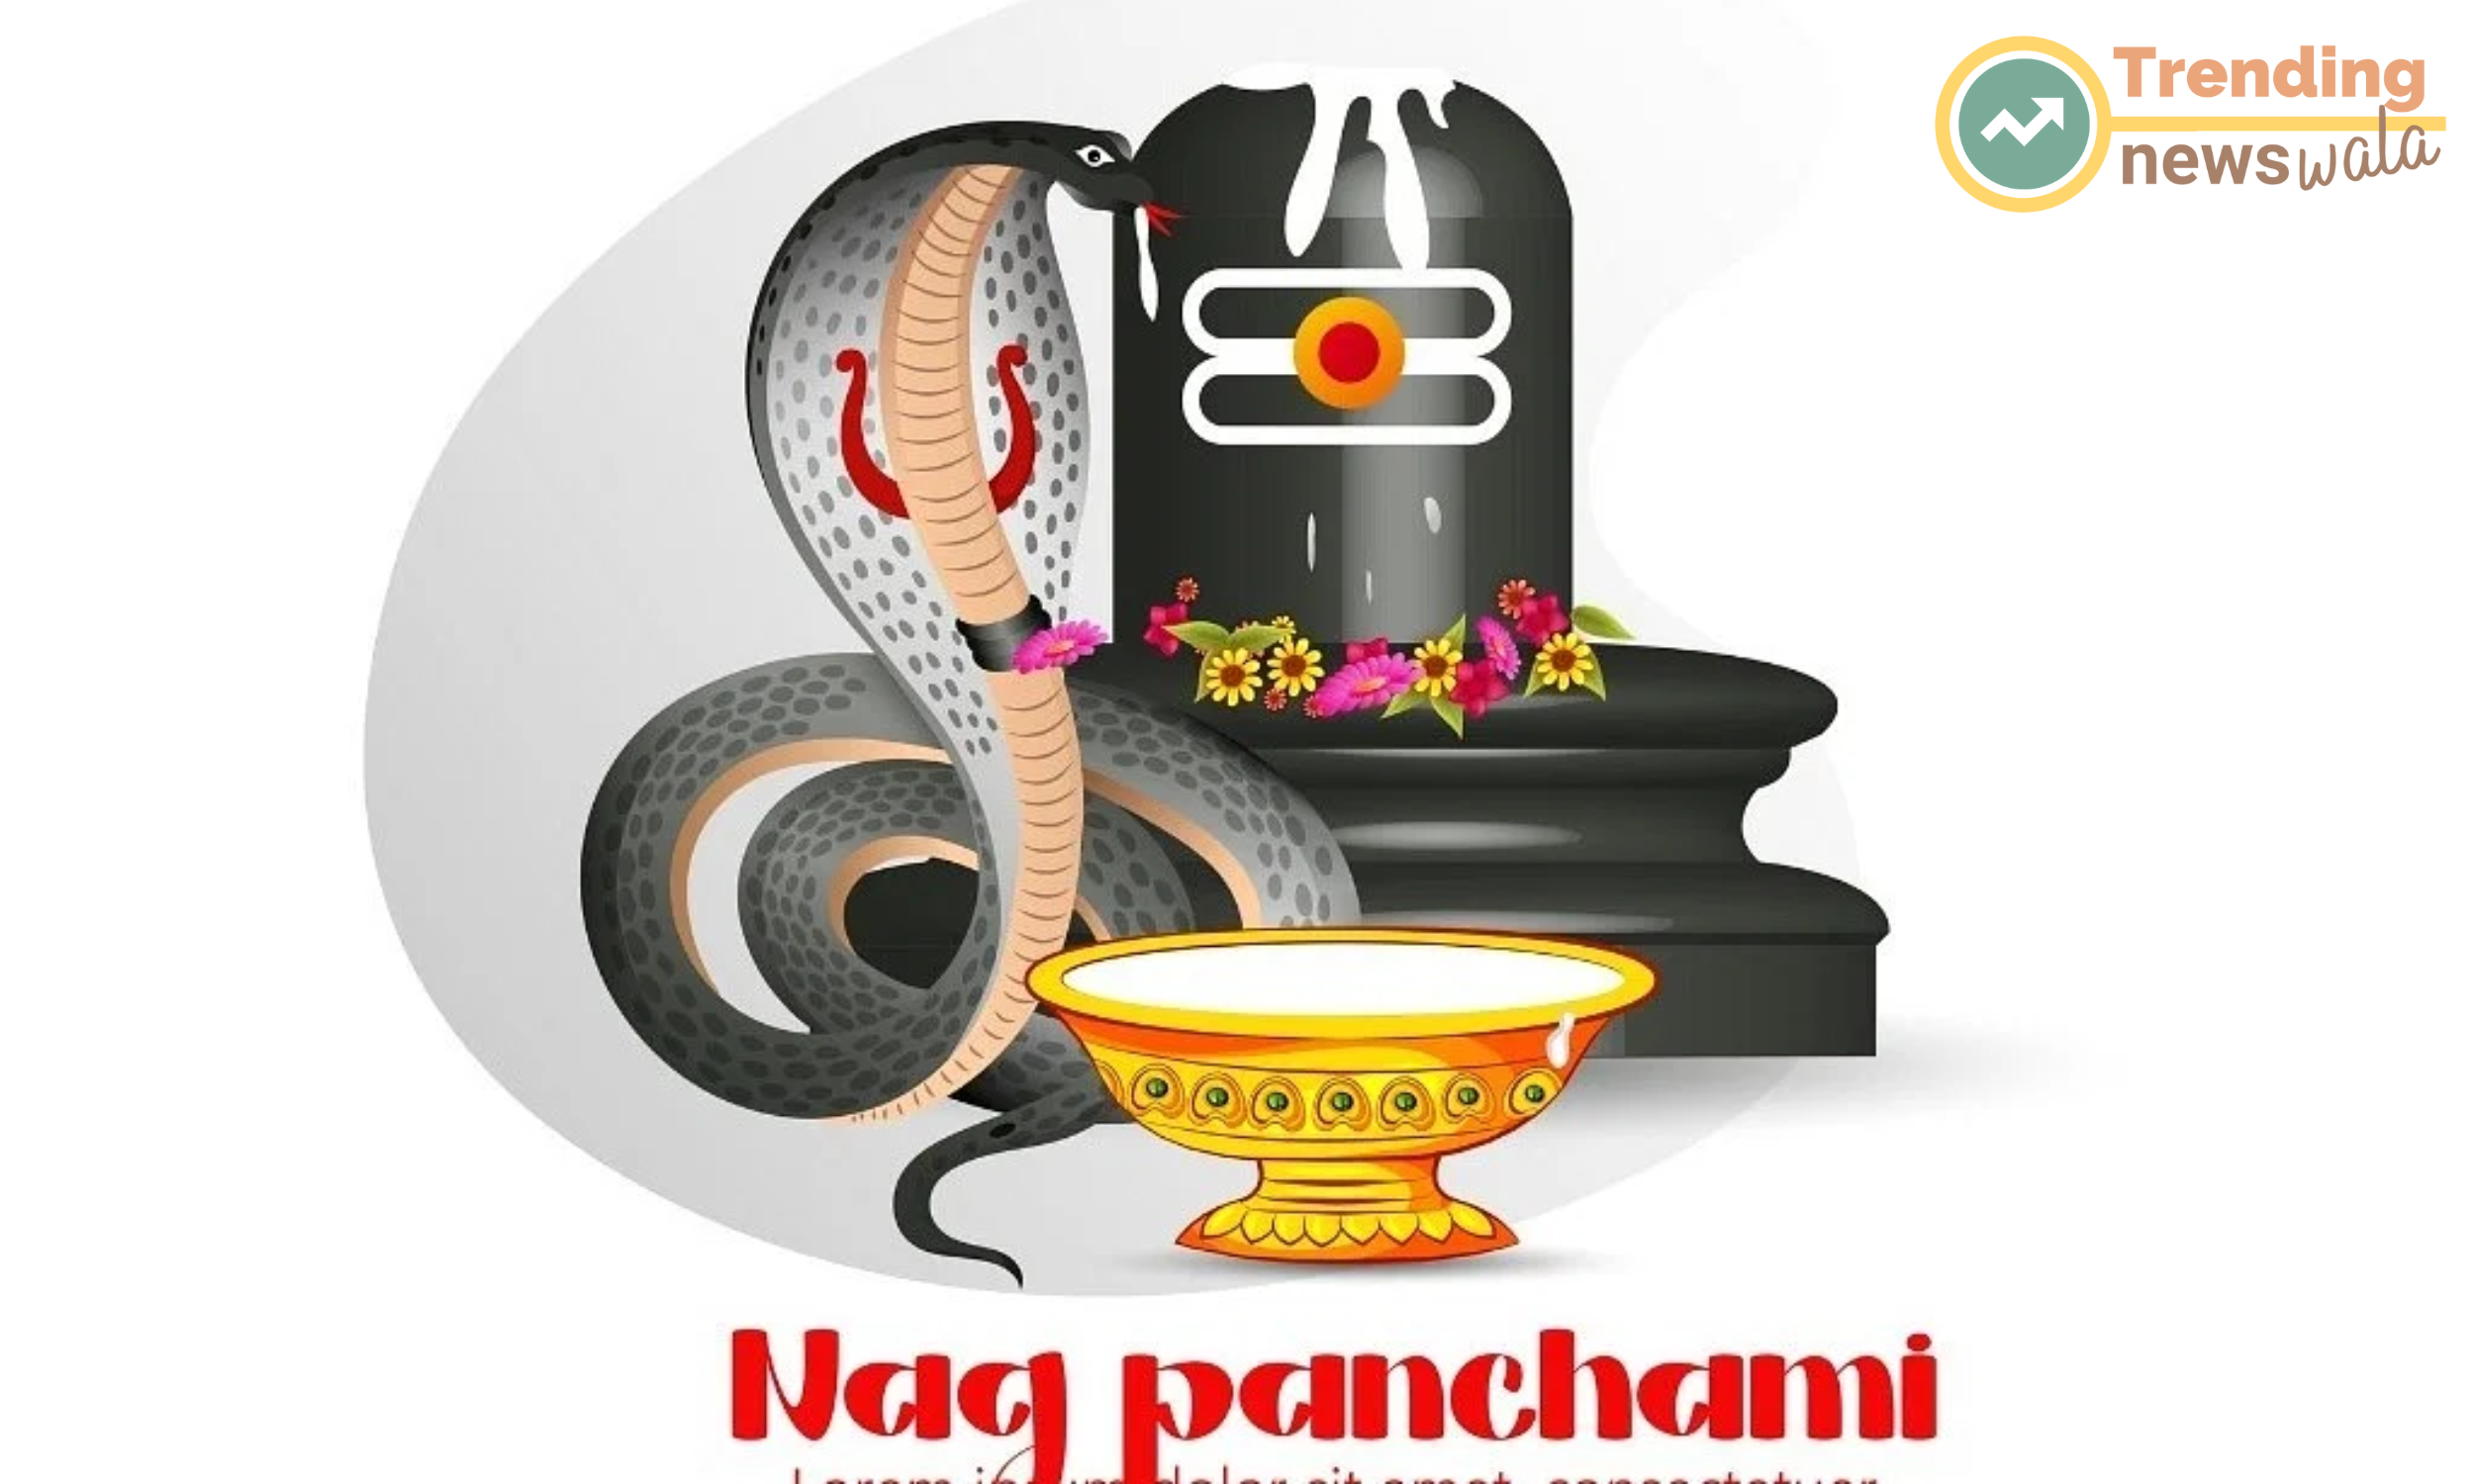 Naga Panchami